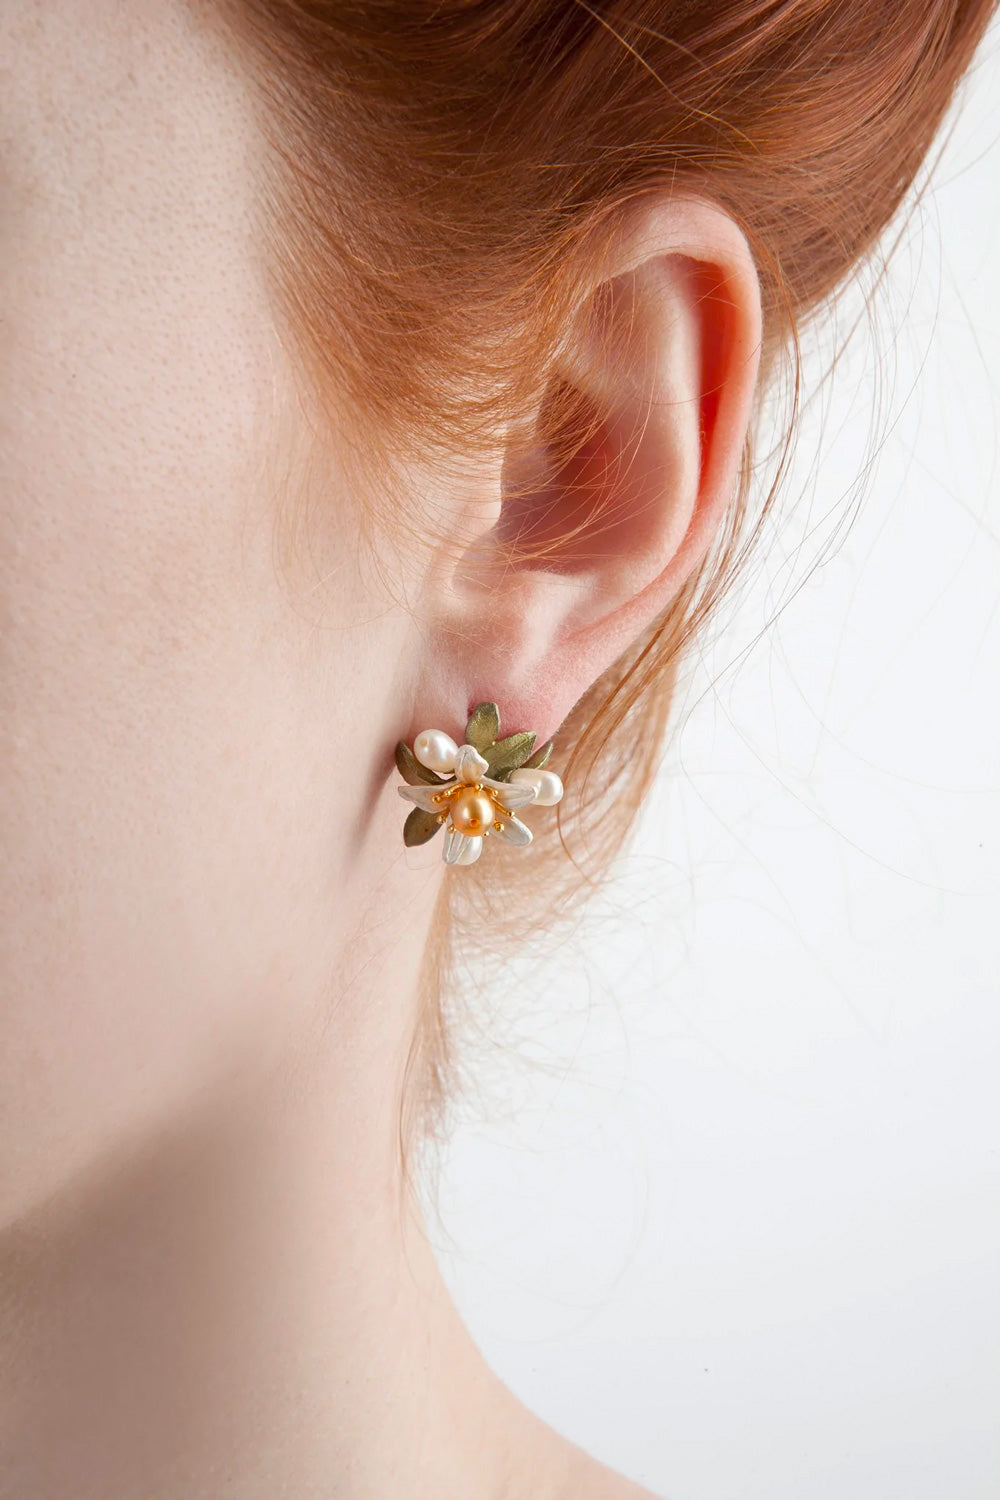 オレンジブロッサムのイヤリング / Orange Blossom Clip Earrings